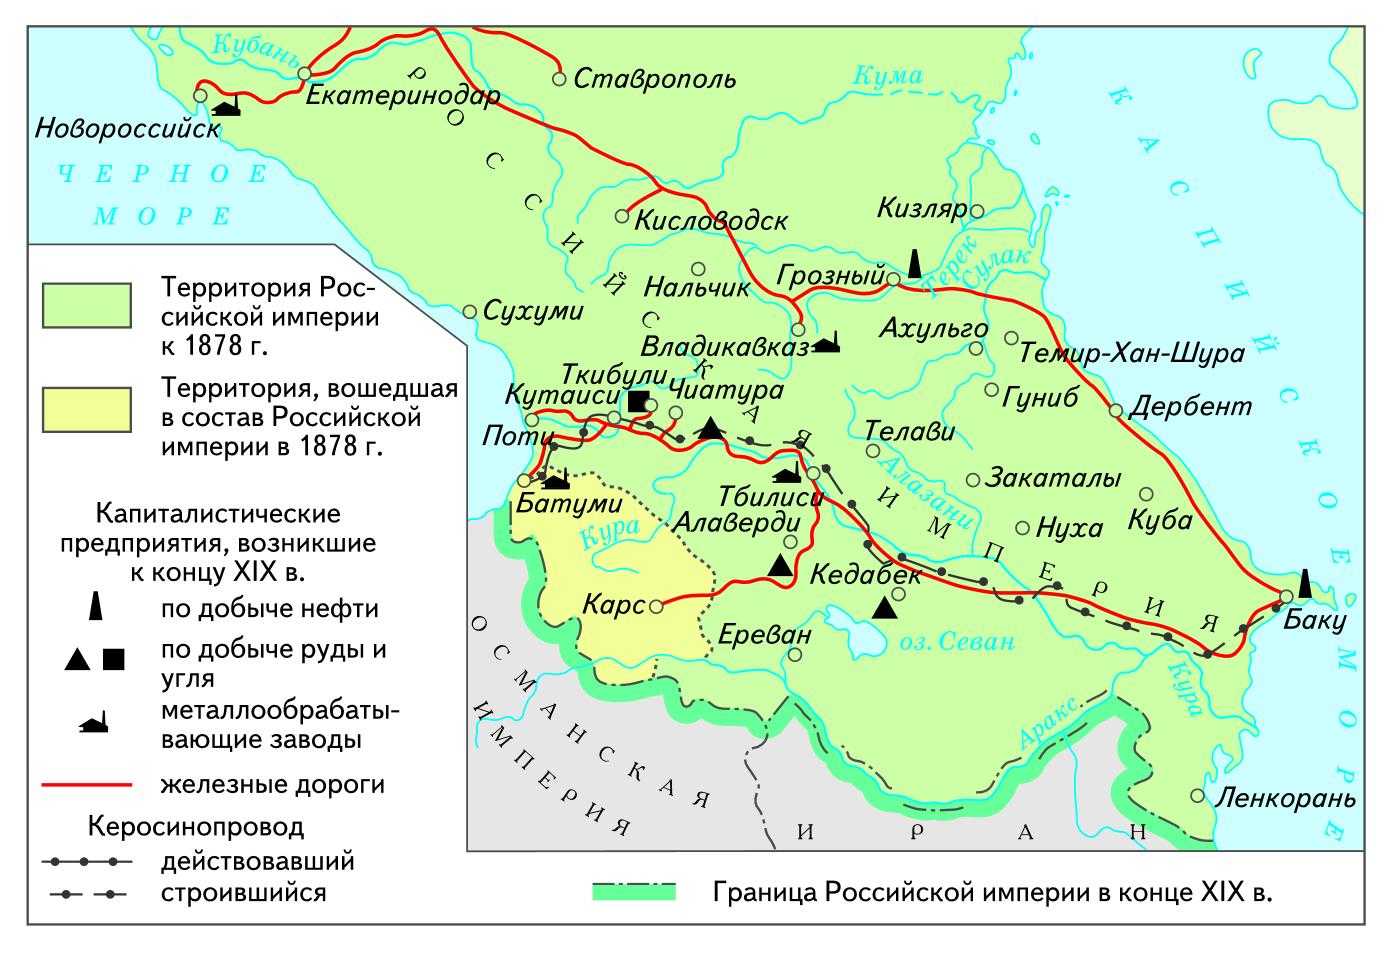 Кавказская война 19 век карта